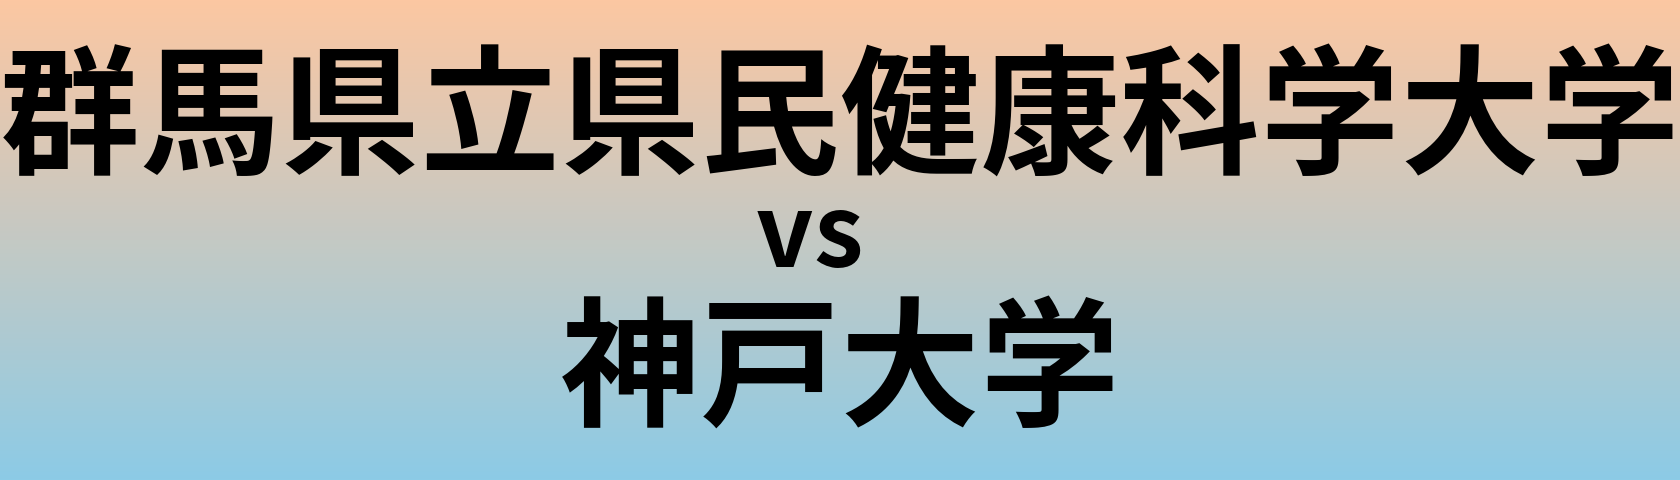 群馬県立県民健康科学大学と神戸大学 のどちらが良い大学?